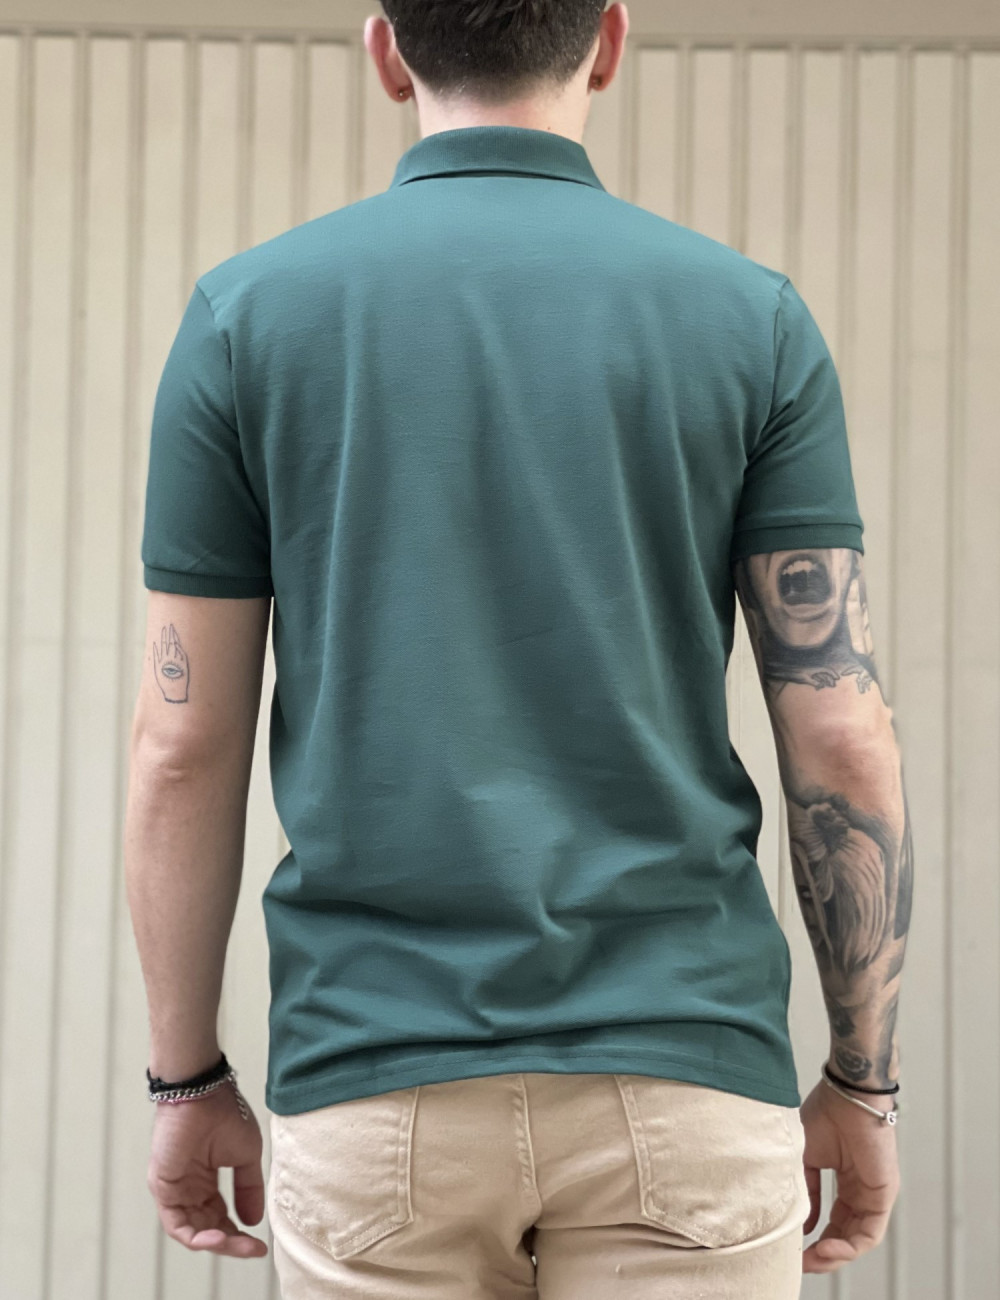 Ανδρική πράσινη βαμβακερή κοντομάνικη μπλούζα Polo 4331L